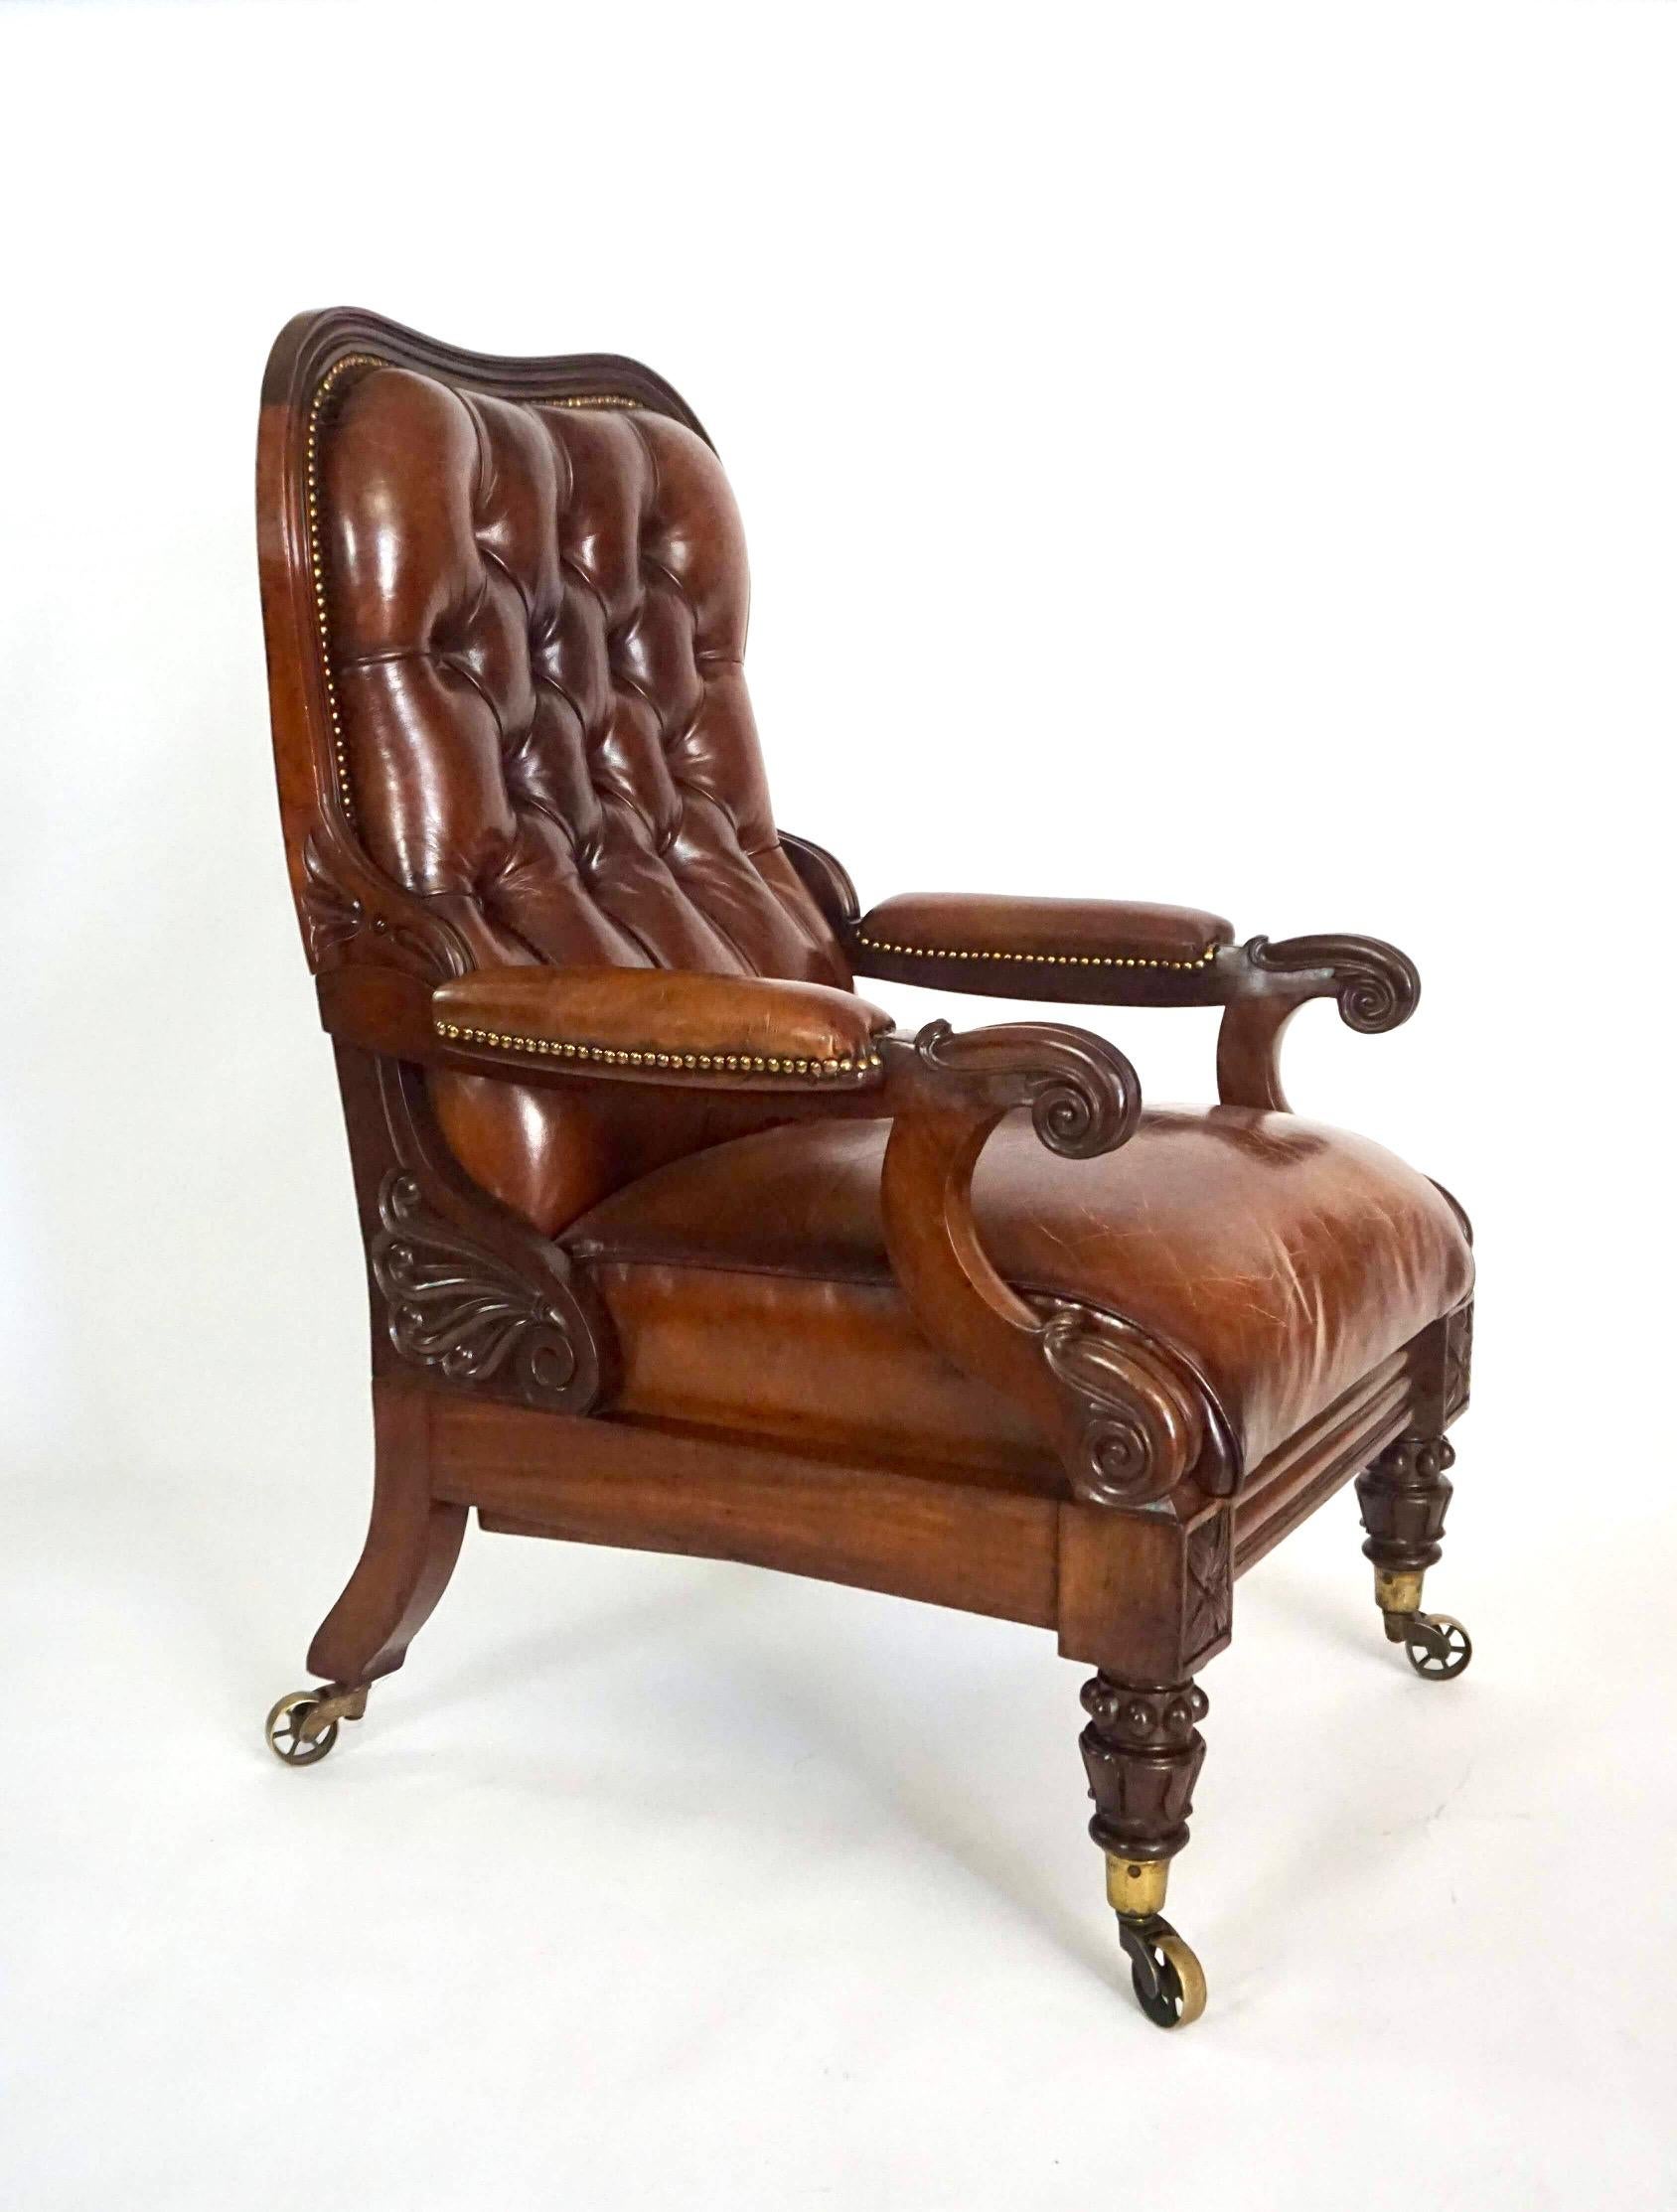 Remarquable fauteuil inclinable de grande taille, d'époque George IV ou Guillaume IV, vers 1830, anglais, peut-être irlandais, de style régence tardive, dont la structure en acajou sculpté est tapissée de cuir. Le dossier inclinable et rembourré est